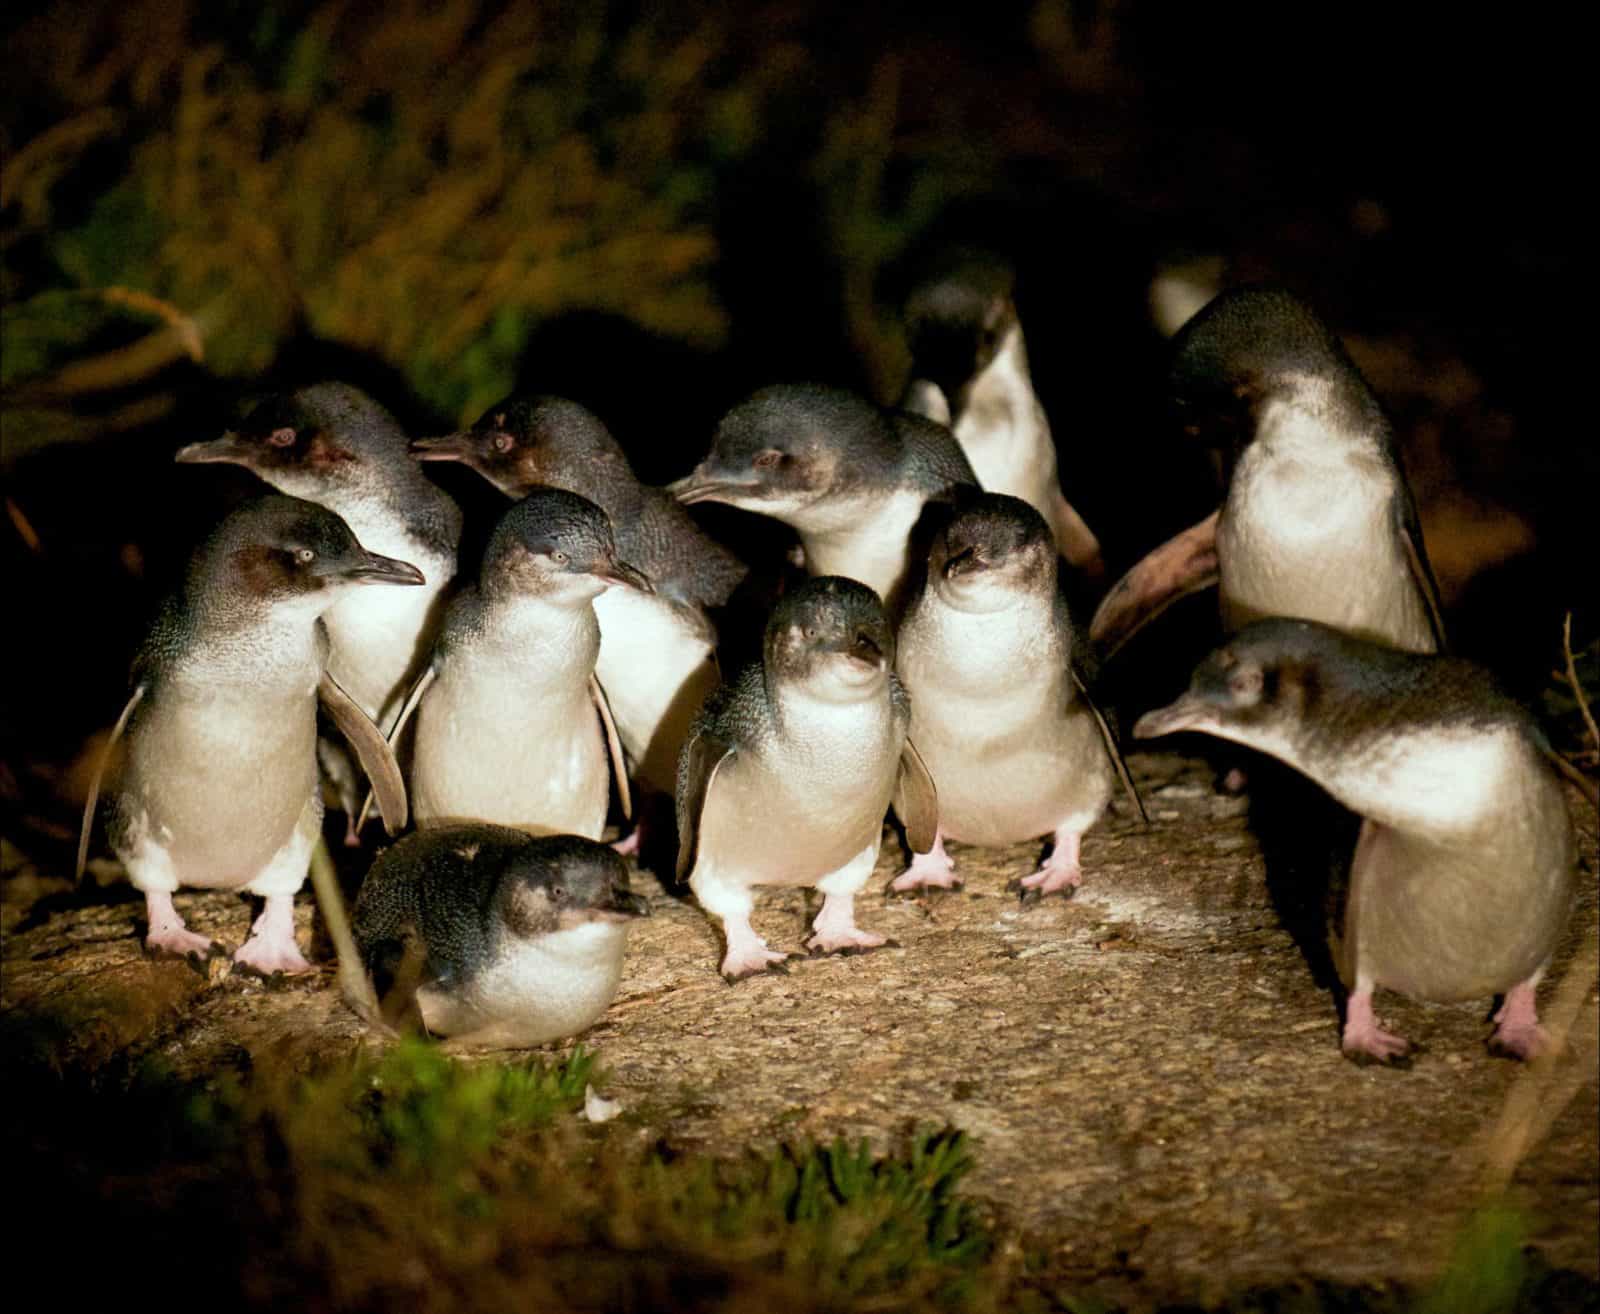 Penguins at dusk